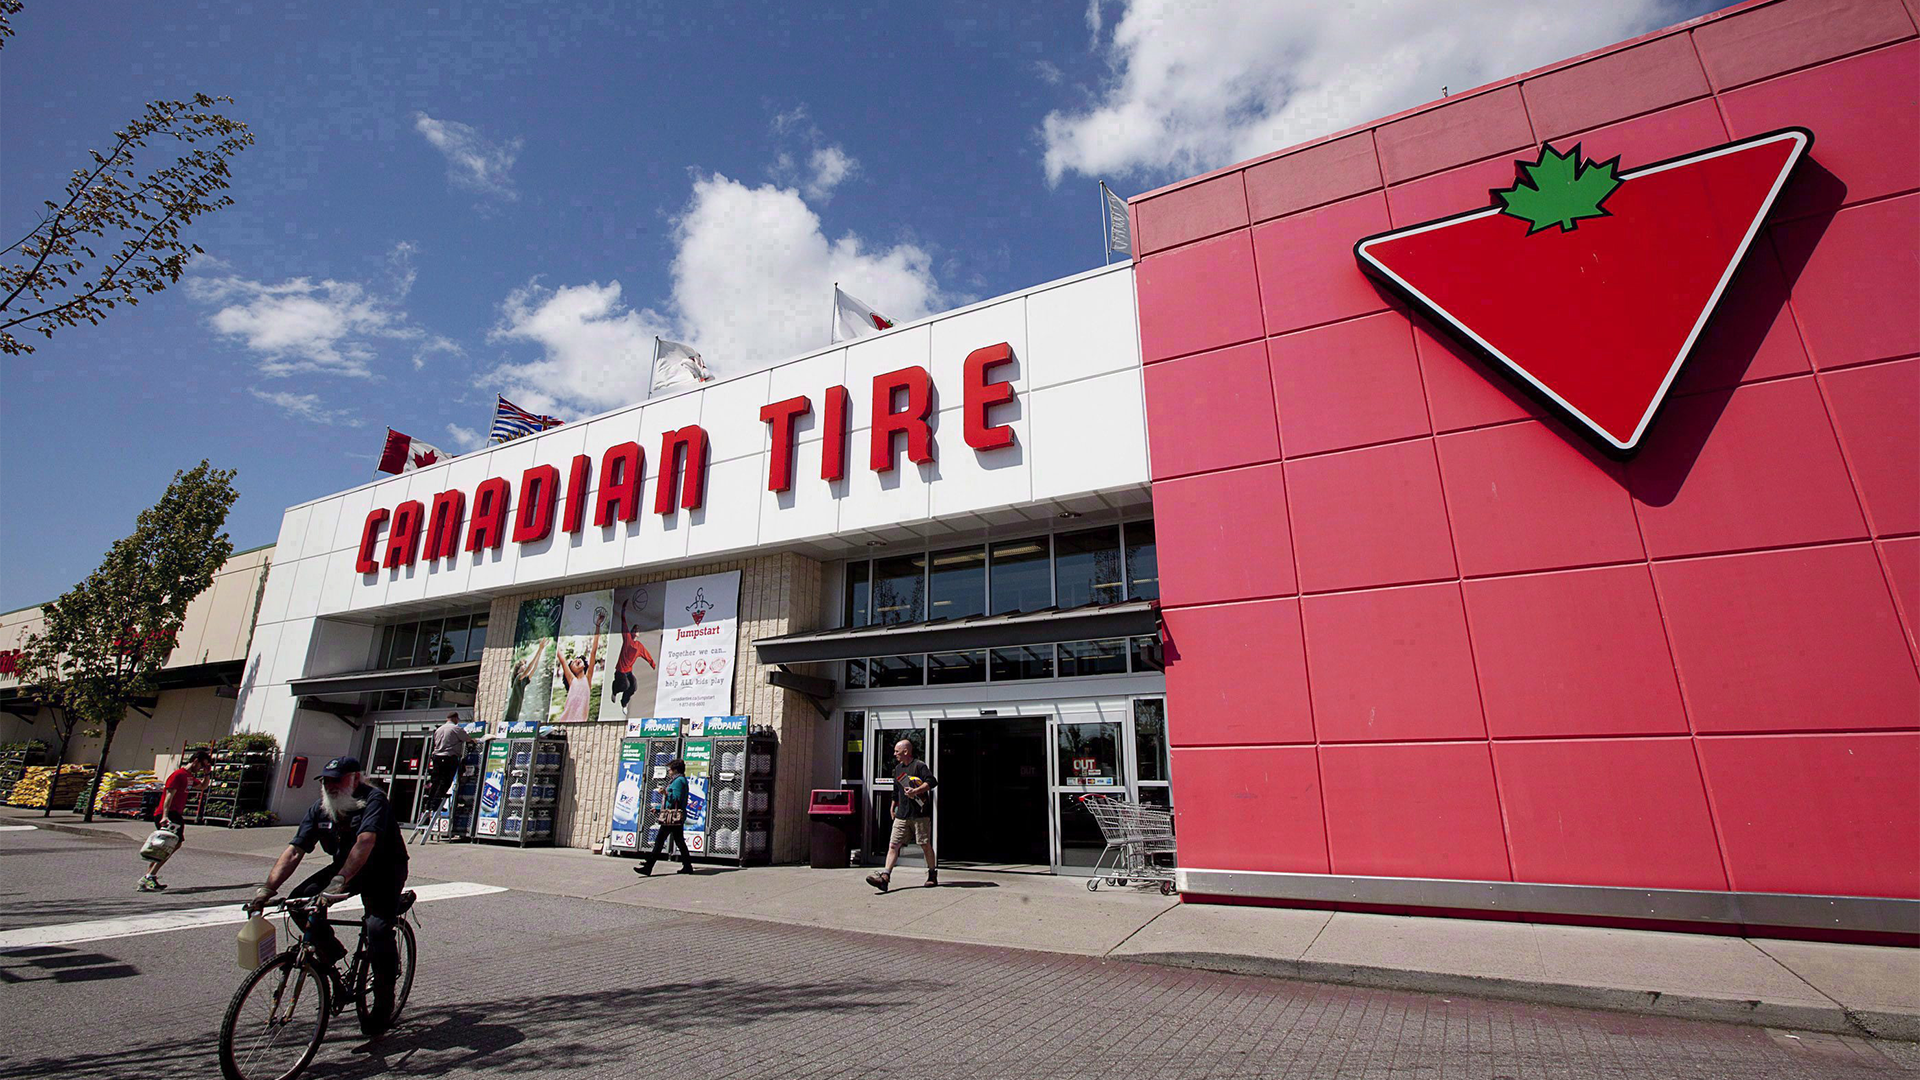 Des groupes syndicaux canadiens ont porté plainte auprès d'un organisme de surveillance fédéral affirmant que Canadian Tire n'avait pas veillé à ce que les travailleurs de ses usines de fournisseurs sud-asiatiques reçoivent un salaire décent.